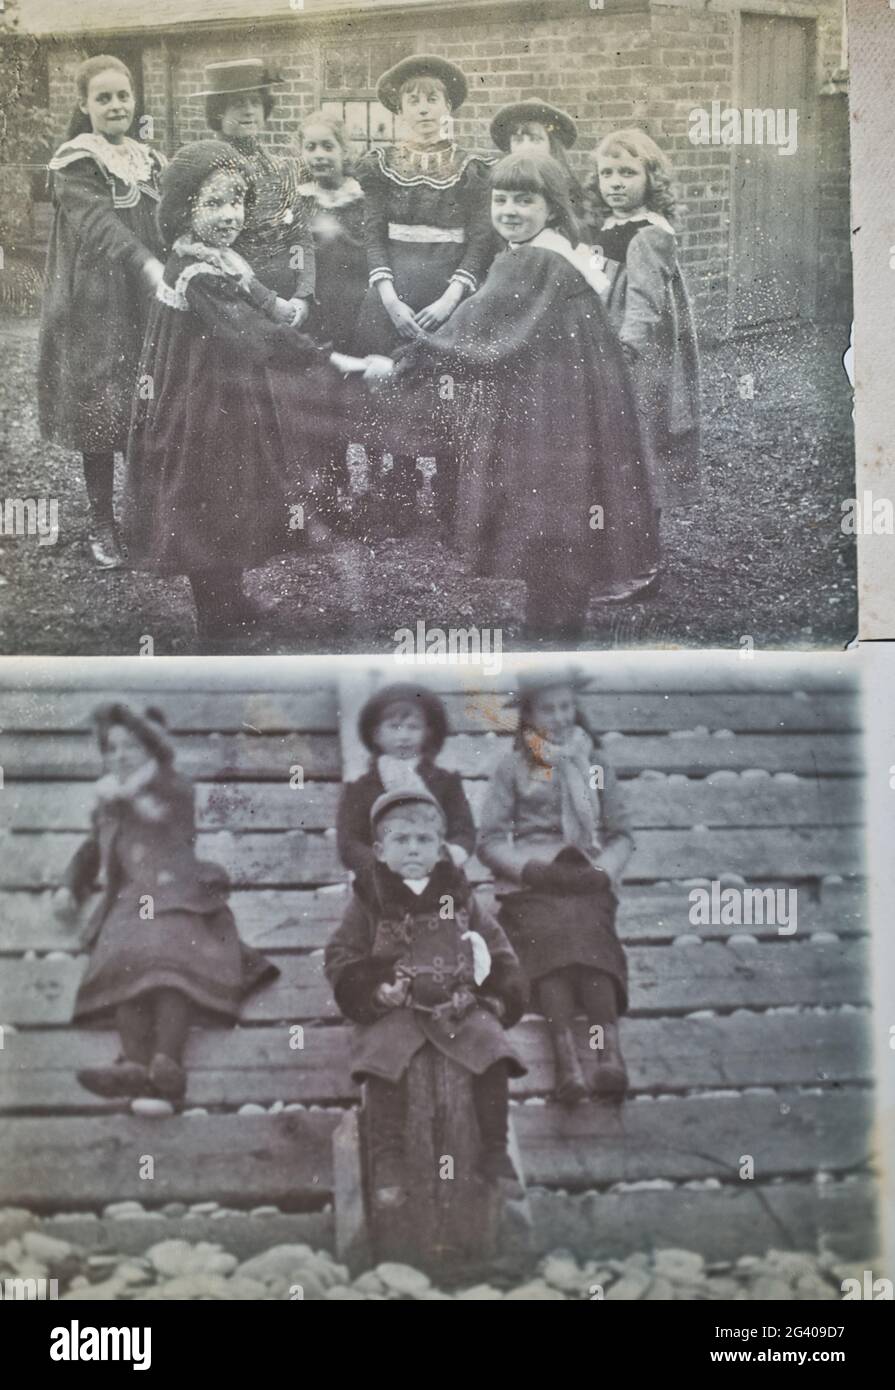 All'inizio del XX secolo autentiche fotografie d'epoca di bambini che giocano e si siedono insieme. Concetto di infanzia, nostalgia, storico Foto Stock